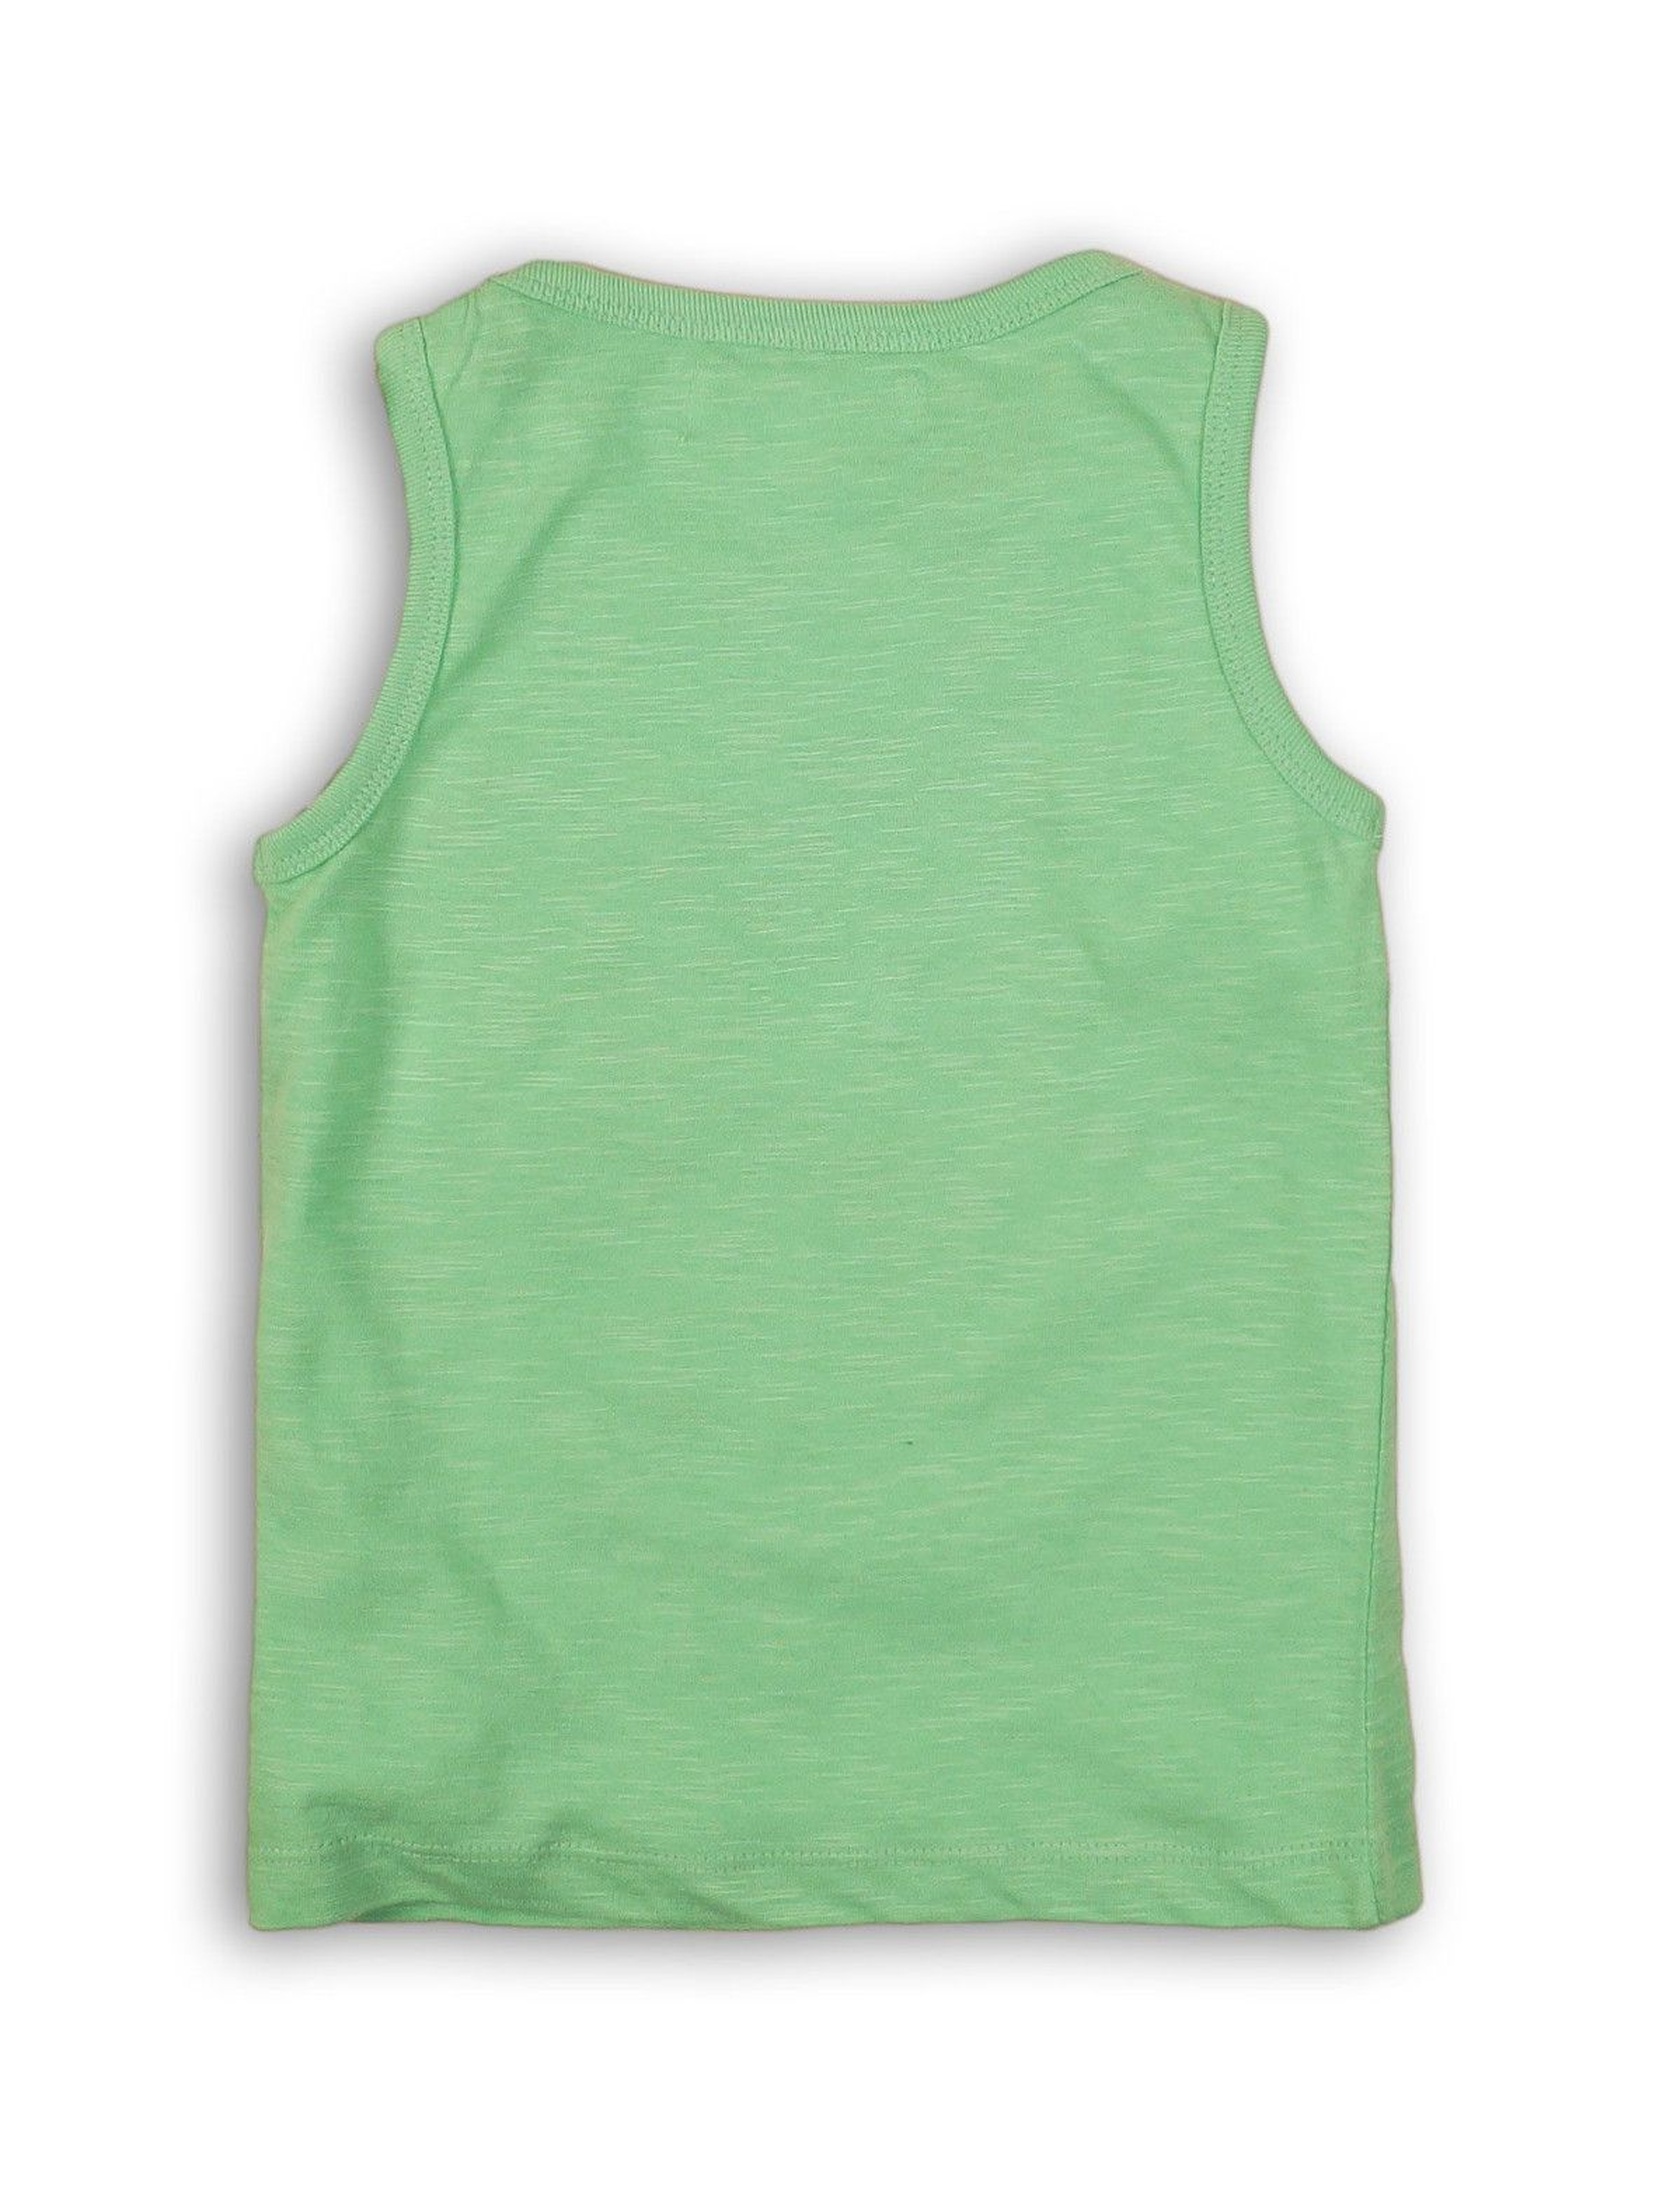 Bluzka chłopięca zielona na ramiączka- 100% bawełna